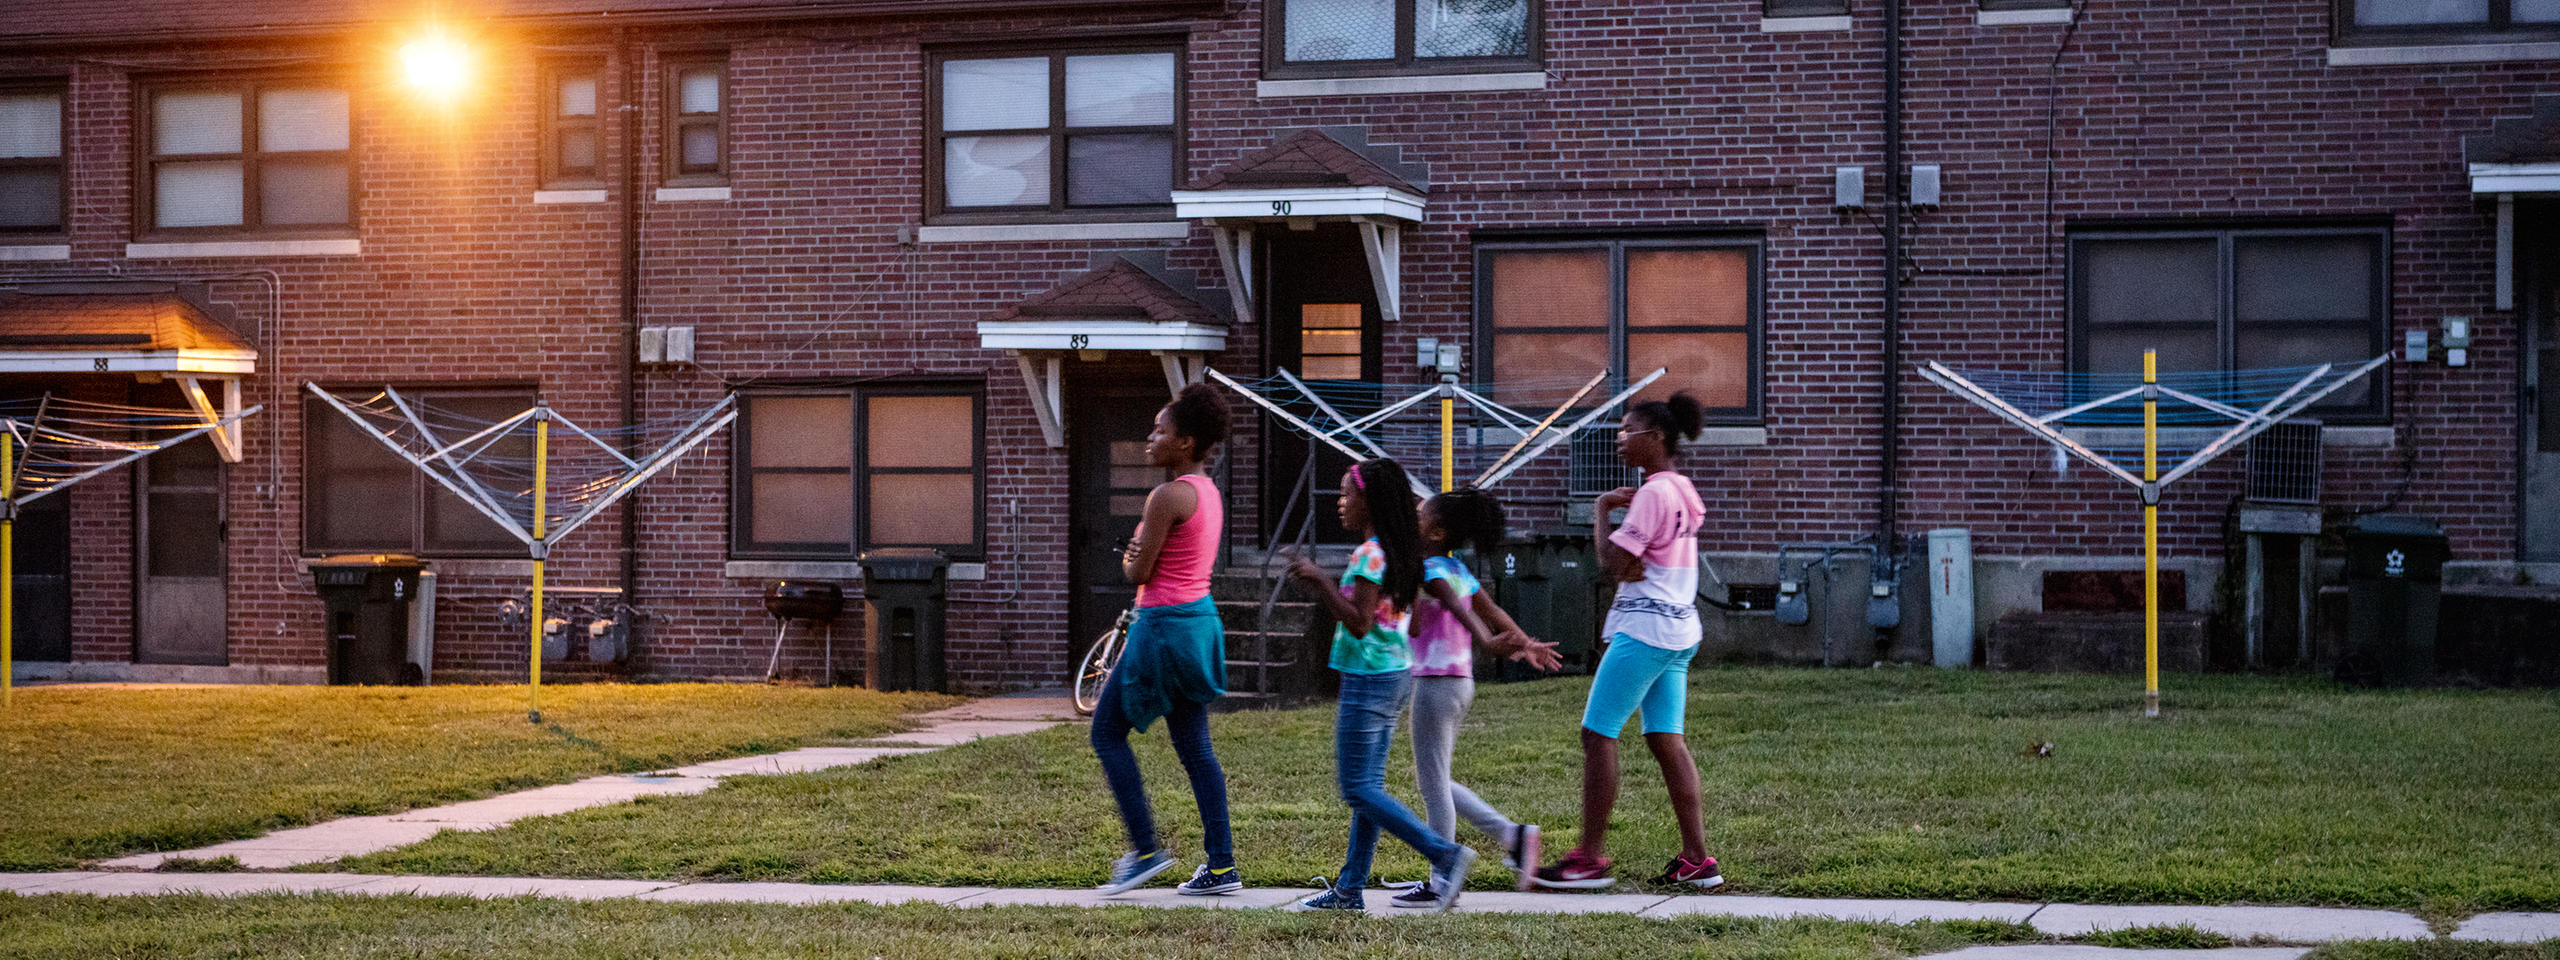 Quatre jeunes filles noires dans une rue américaine